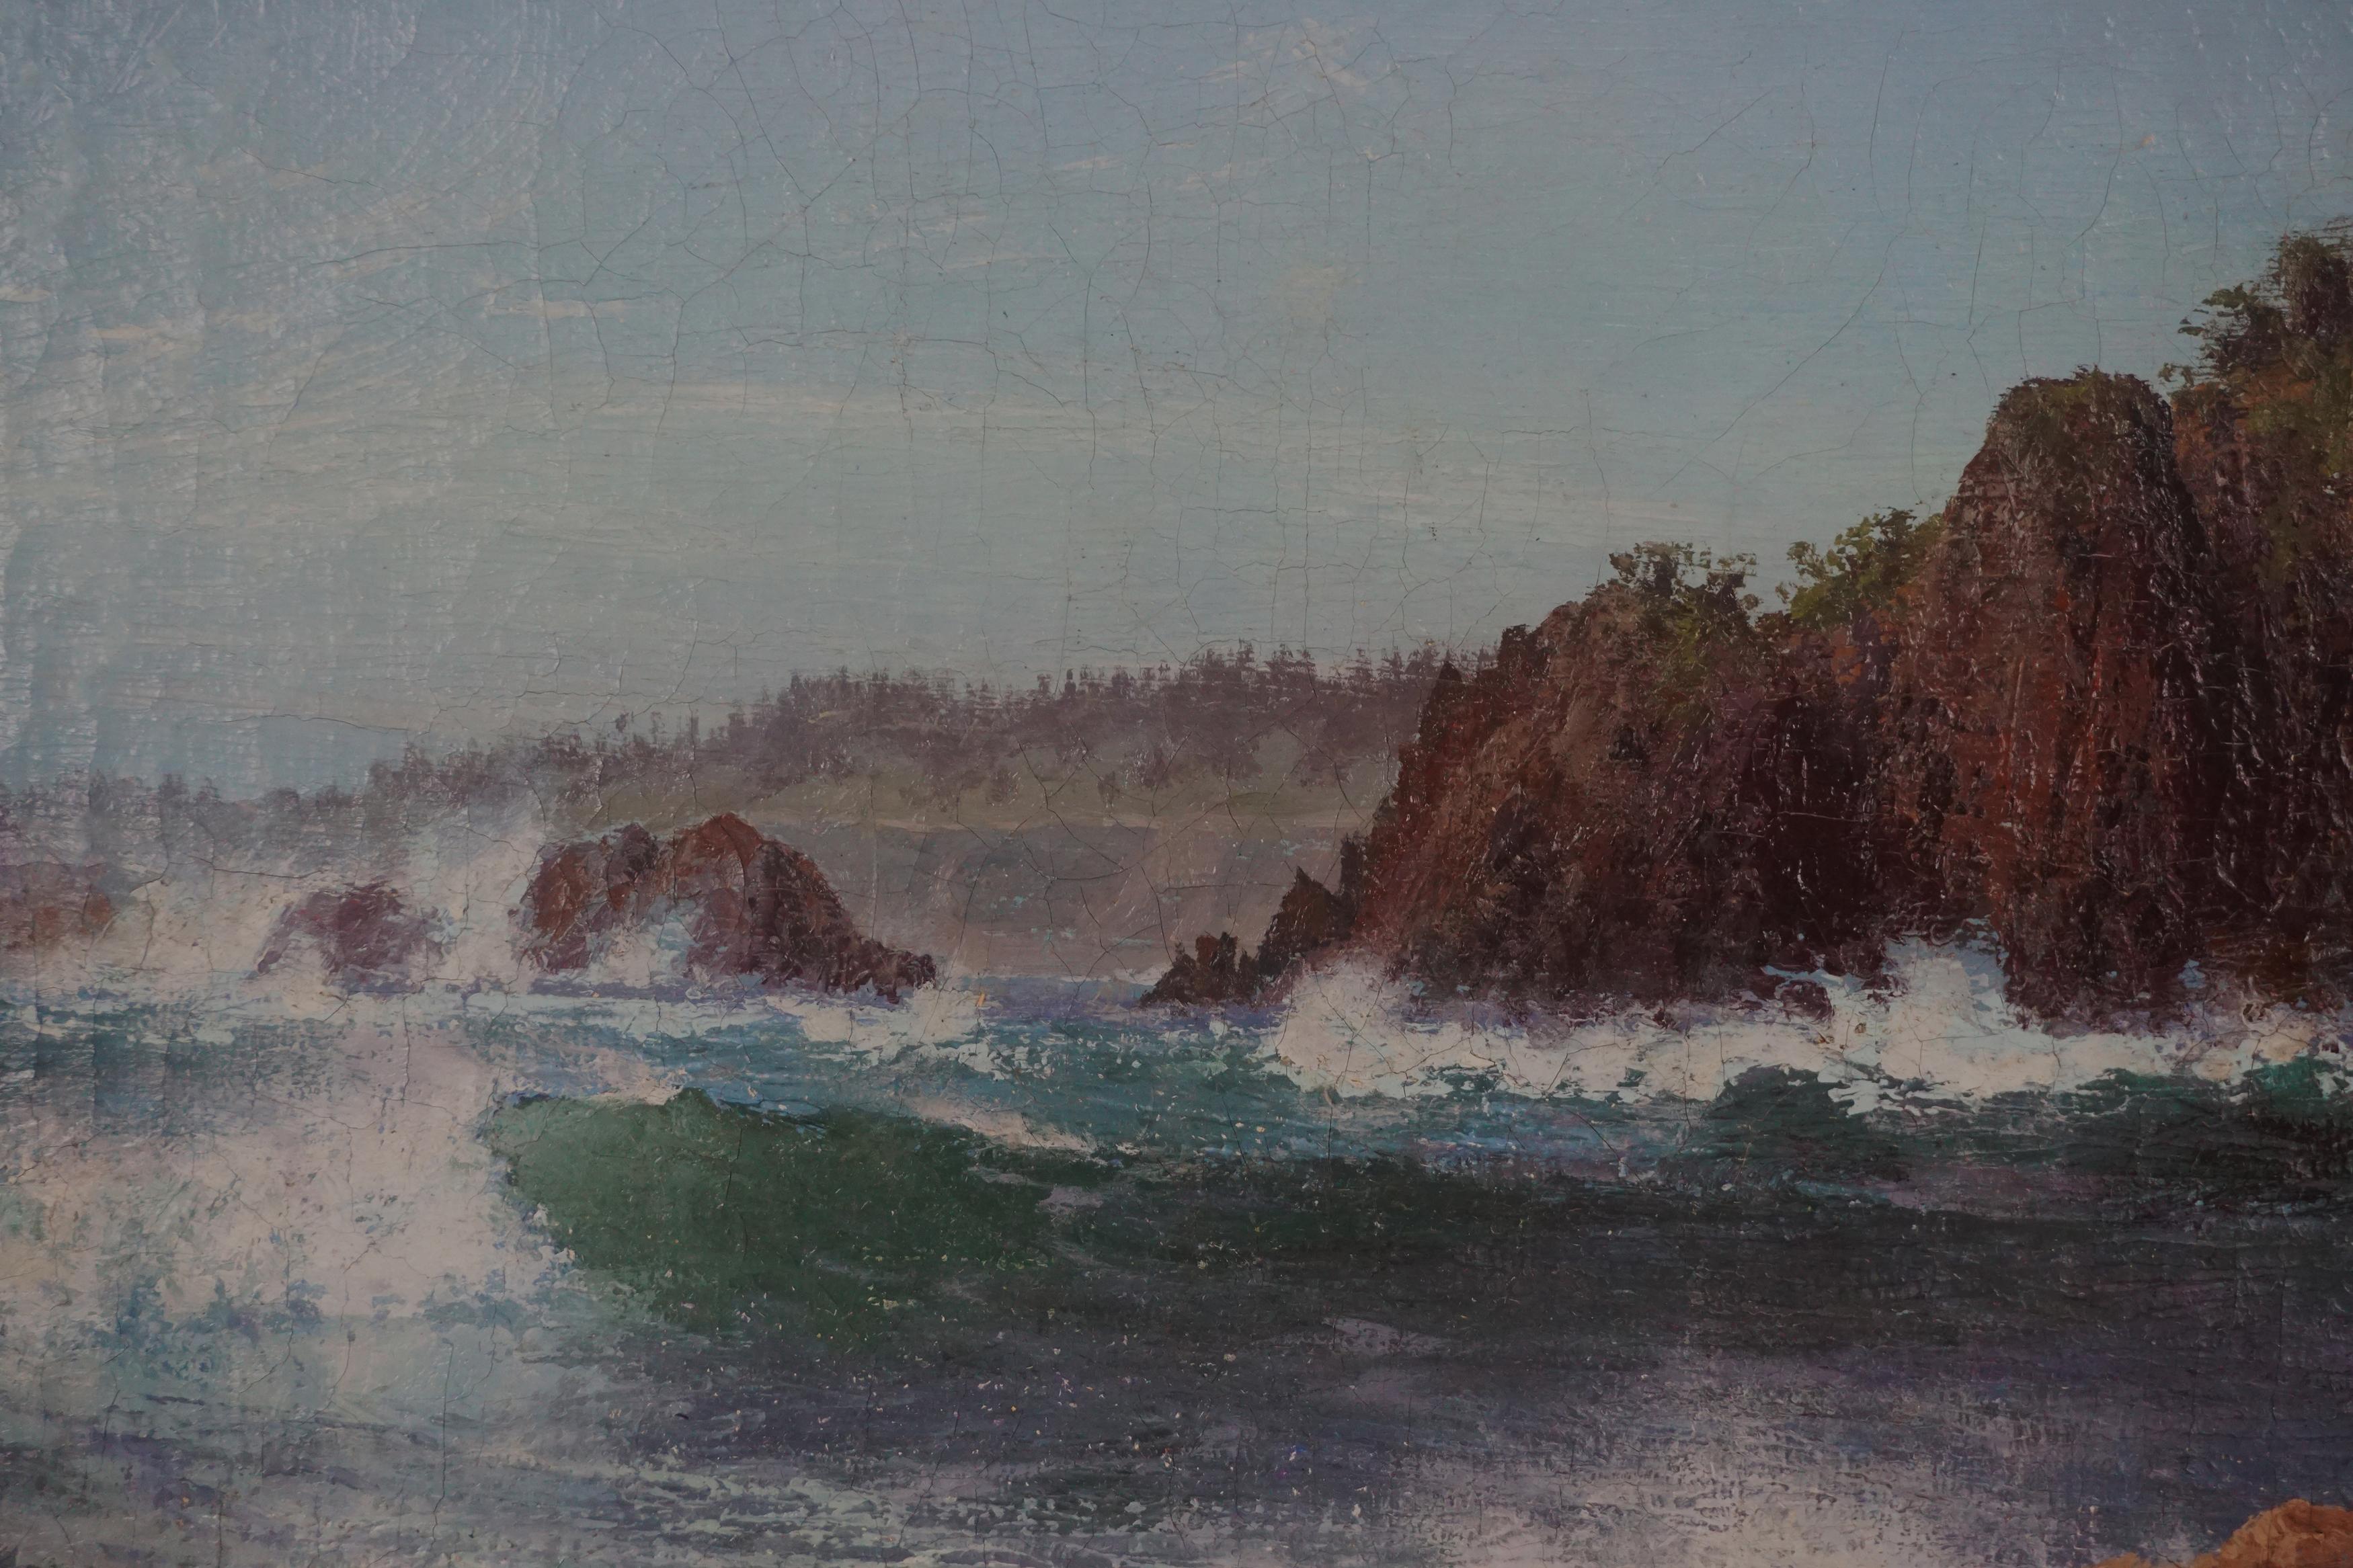 Originales Ölgemälde, Mendocino-Küste, Kalifornien, Meereslandschaft, 1908  (Amerikanischer Impressionismus), Painting, von Charles Dorman Robinson